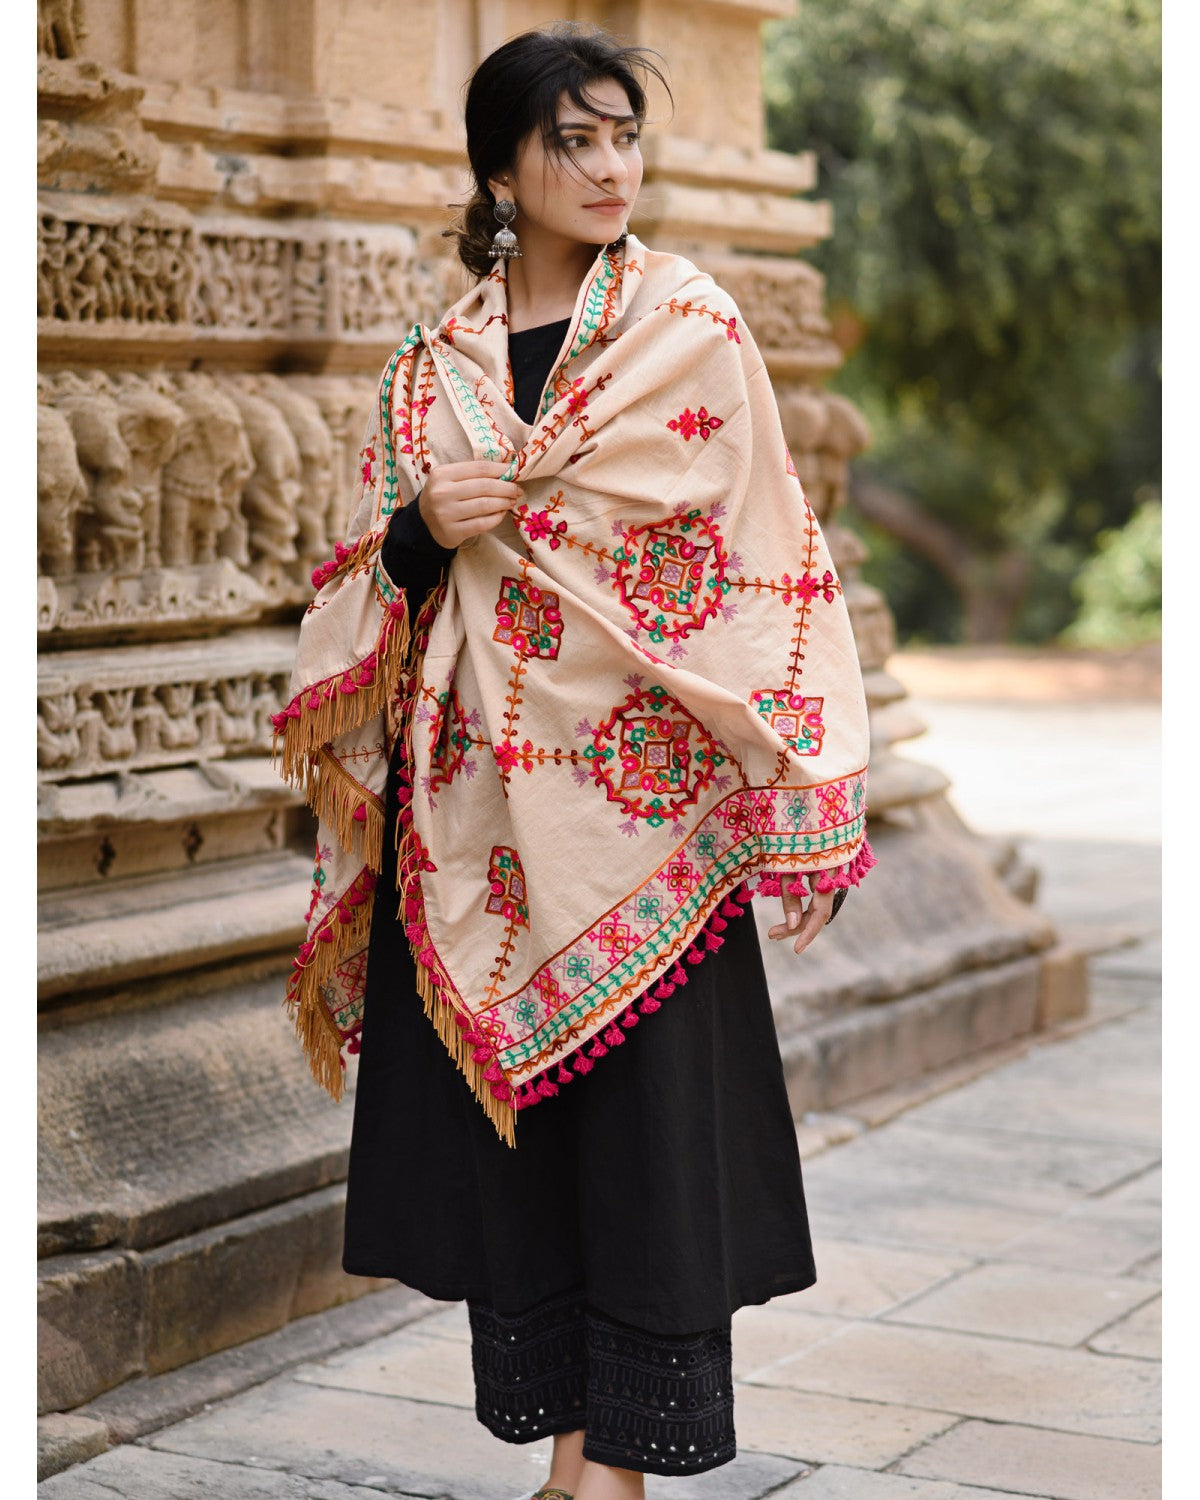 Women's Beige Floral Motifs Aari Heavily Embroidered Khadi Shawl/Dupatta With 
Rani Tassel Lace - MESMORA FASHION